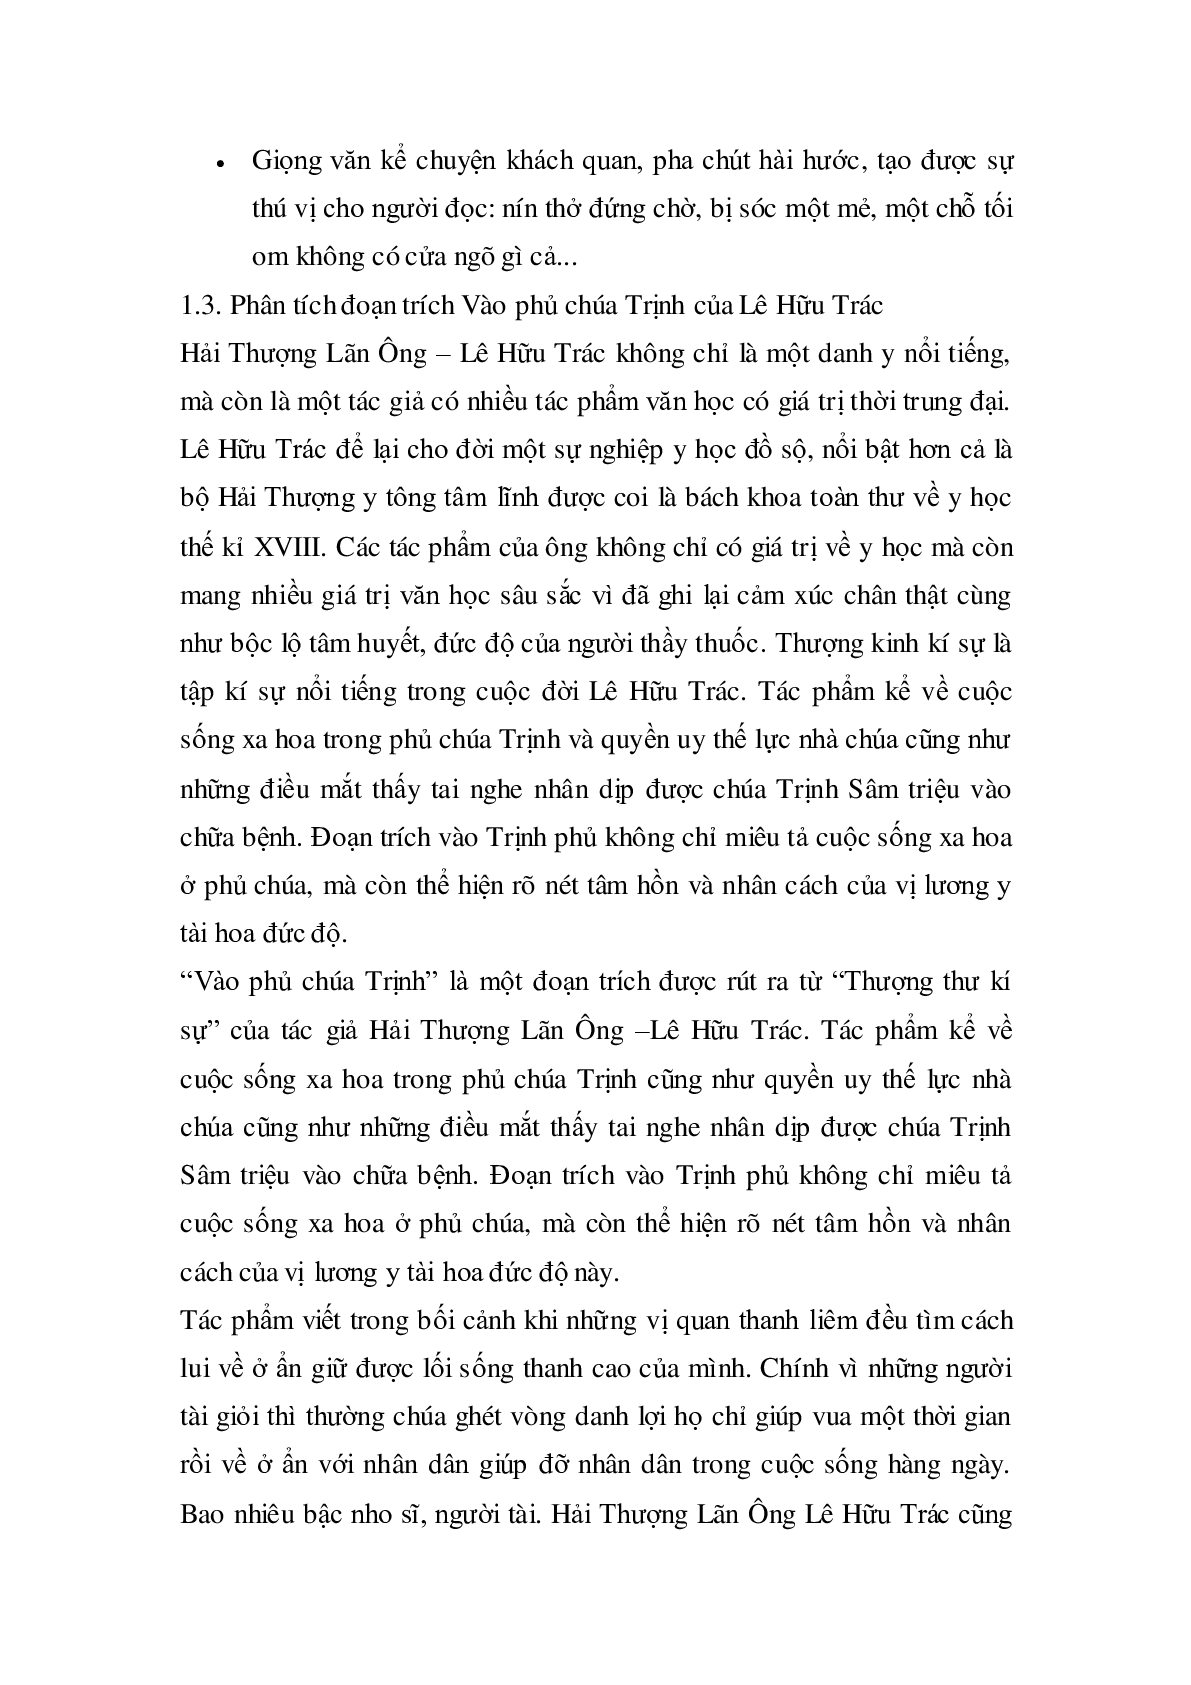 Soạn bài Vào phủ chúa Trịnh của Lê Hữu Trác - ngắn nhất Soạn văn 11 (trang 6)